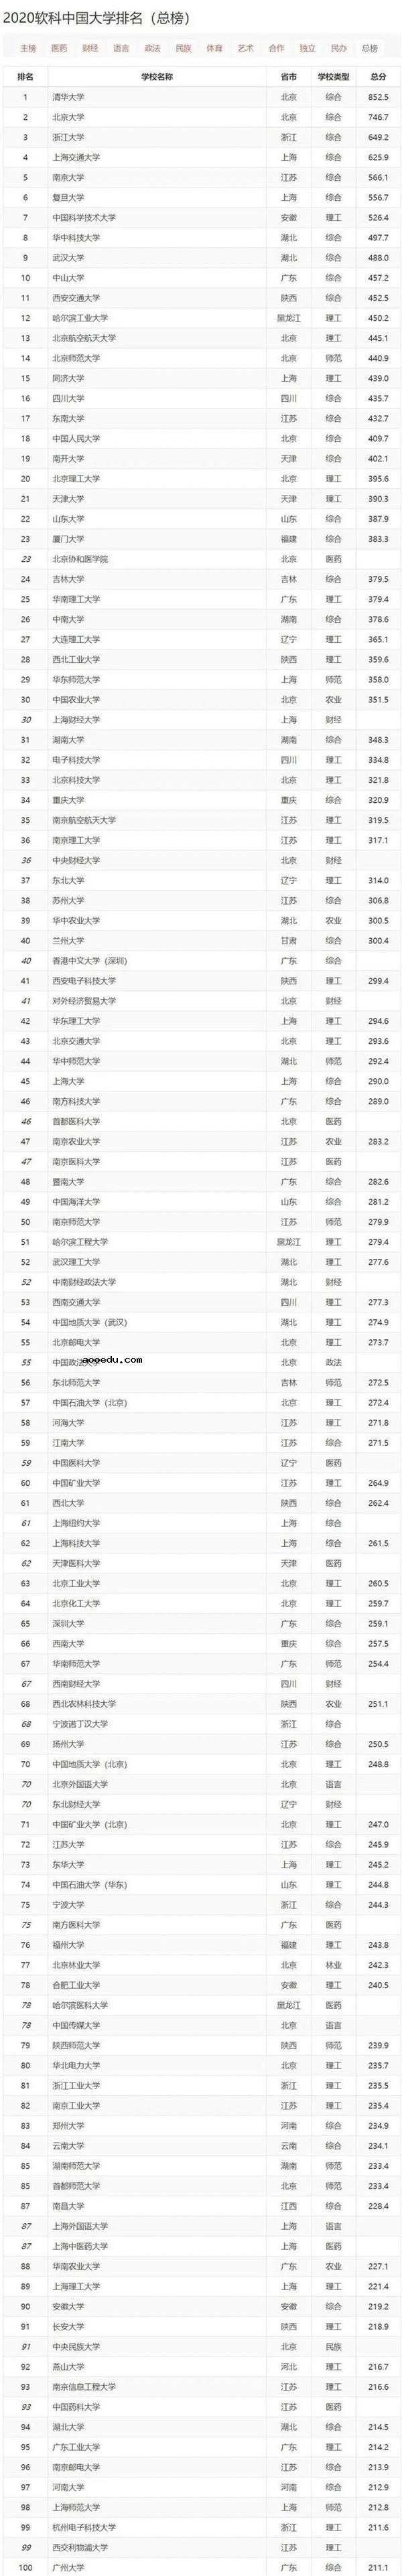 2020年软科中国大学排名公布